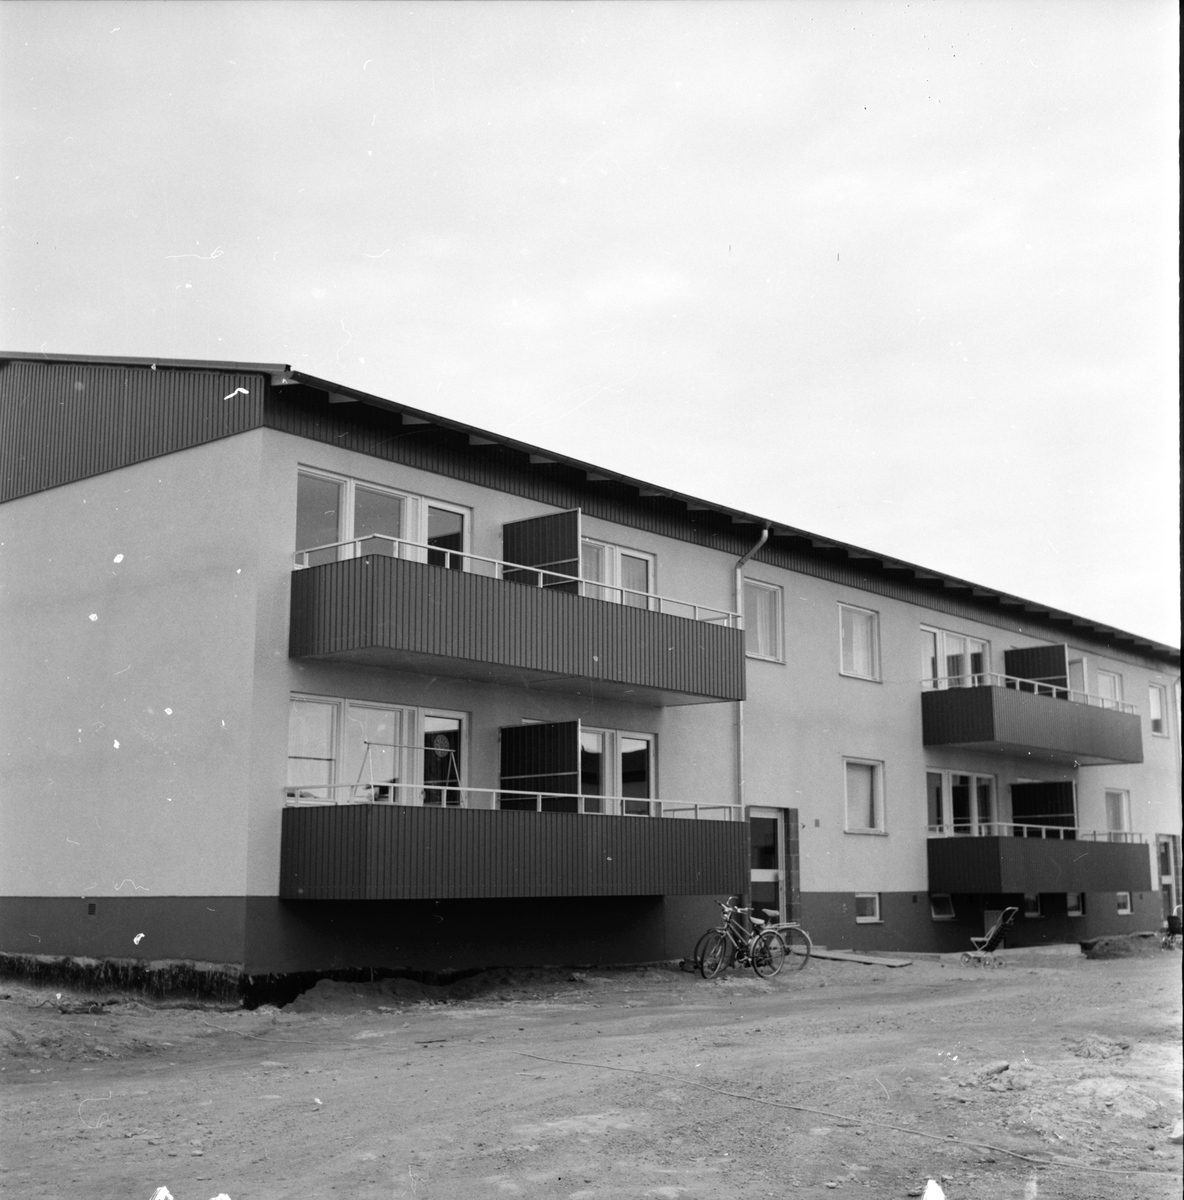 Arbrå,
Nybygge i kv. Åsparken,
Oktober 1971